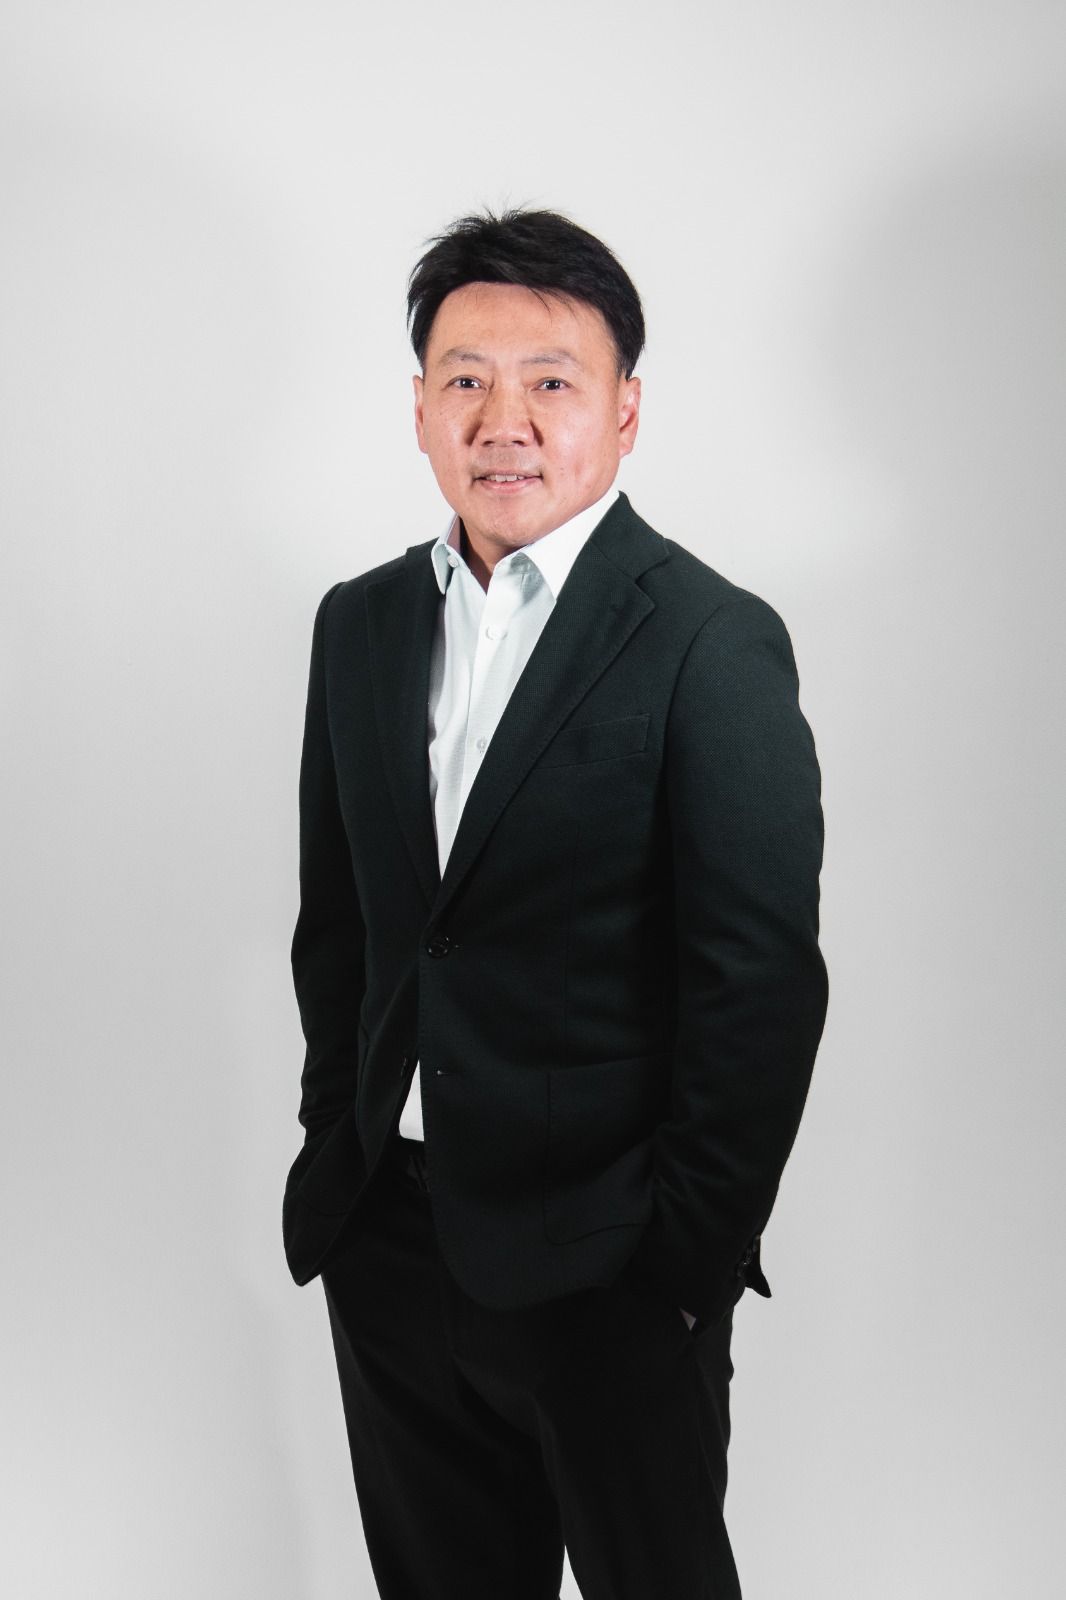 Ông Kitti Chungsawanant, Giám đốc KJTN Engineering